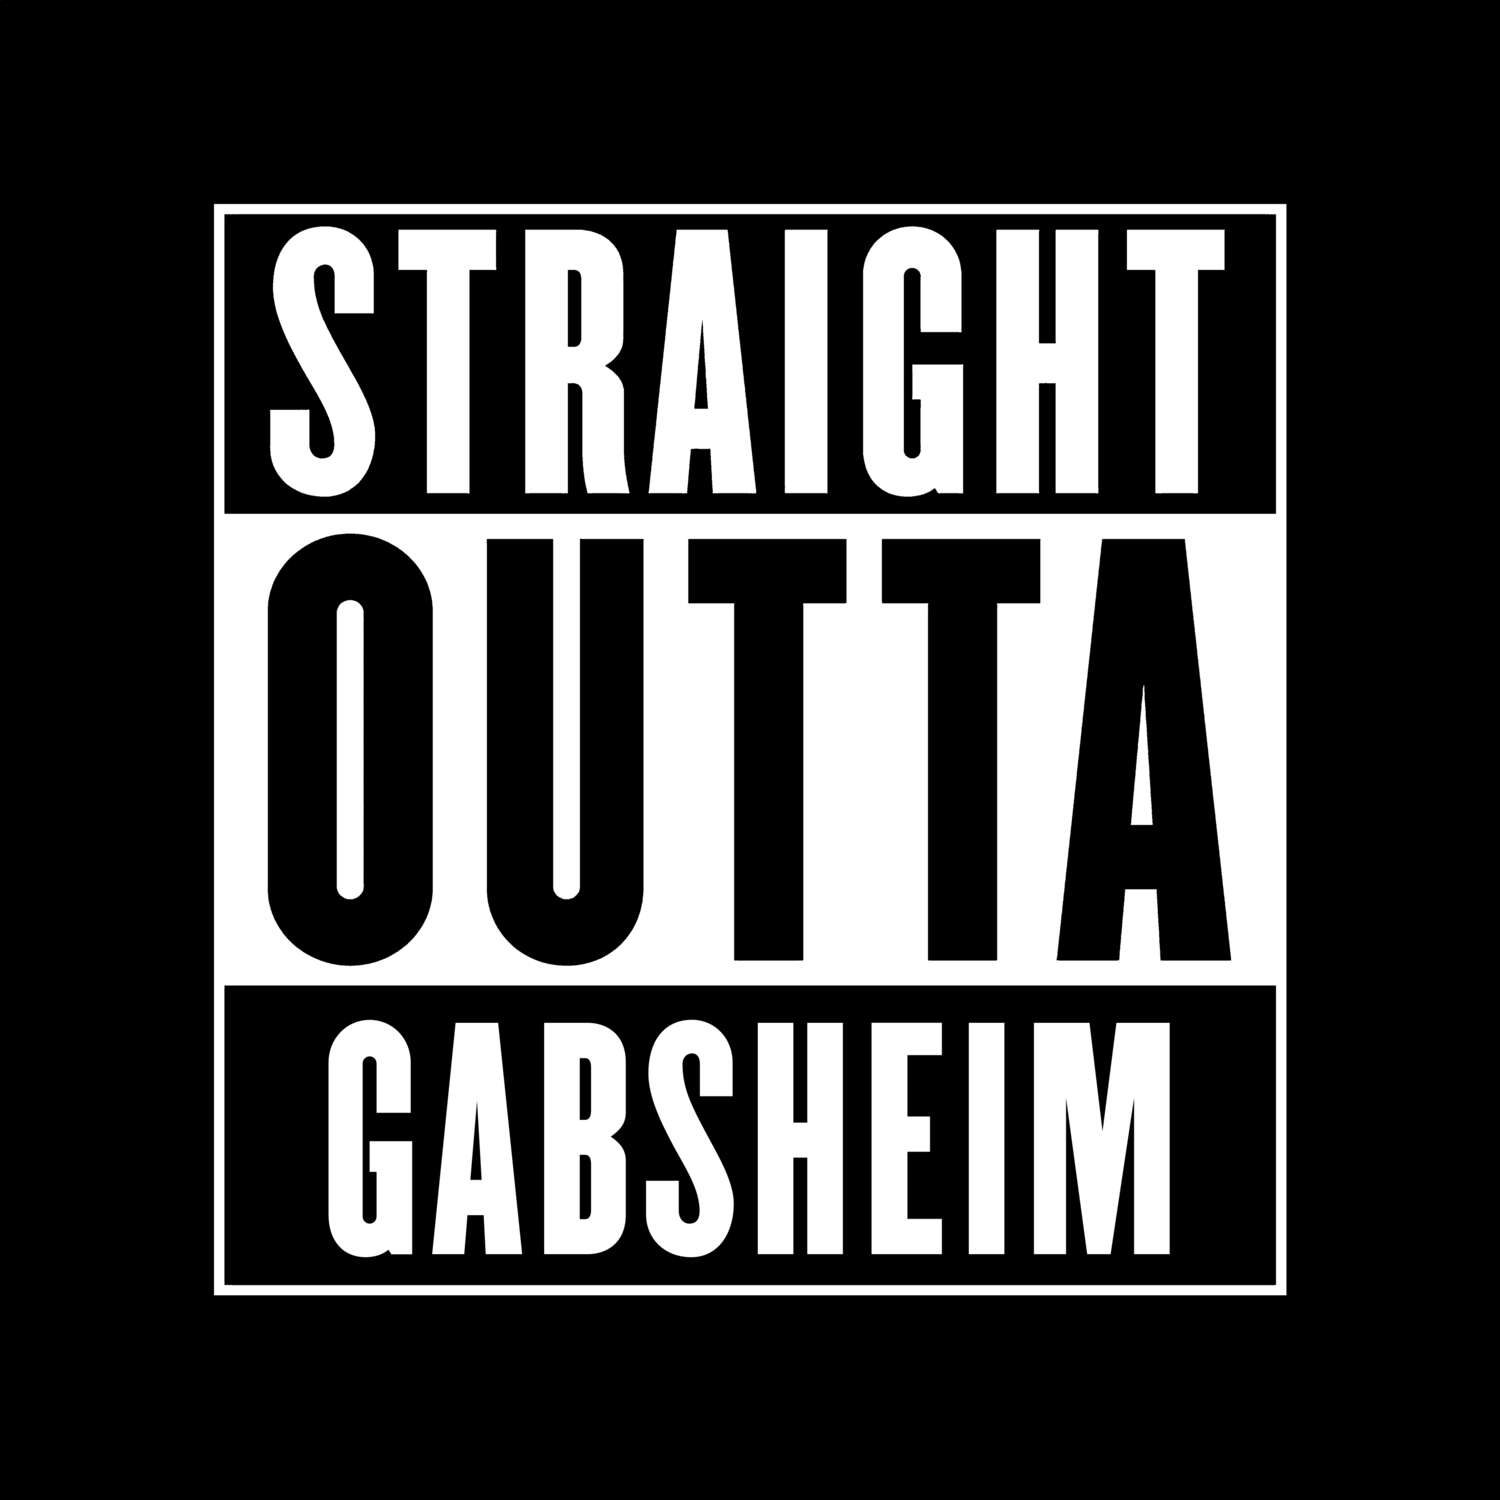 Gabsheim T-Shirt »Straight Outta«